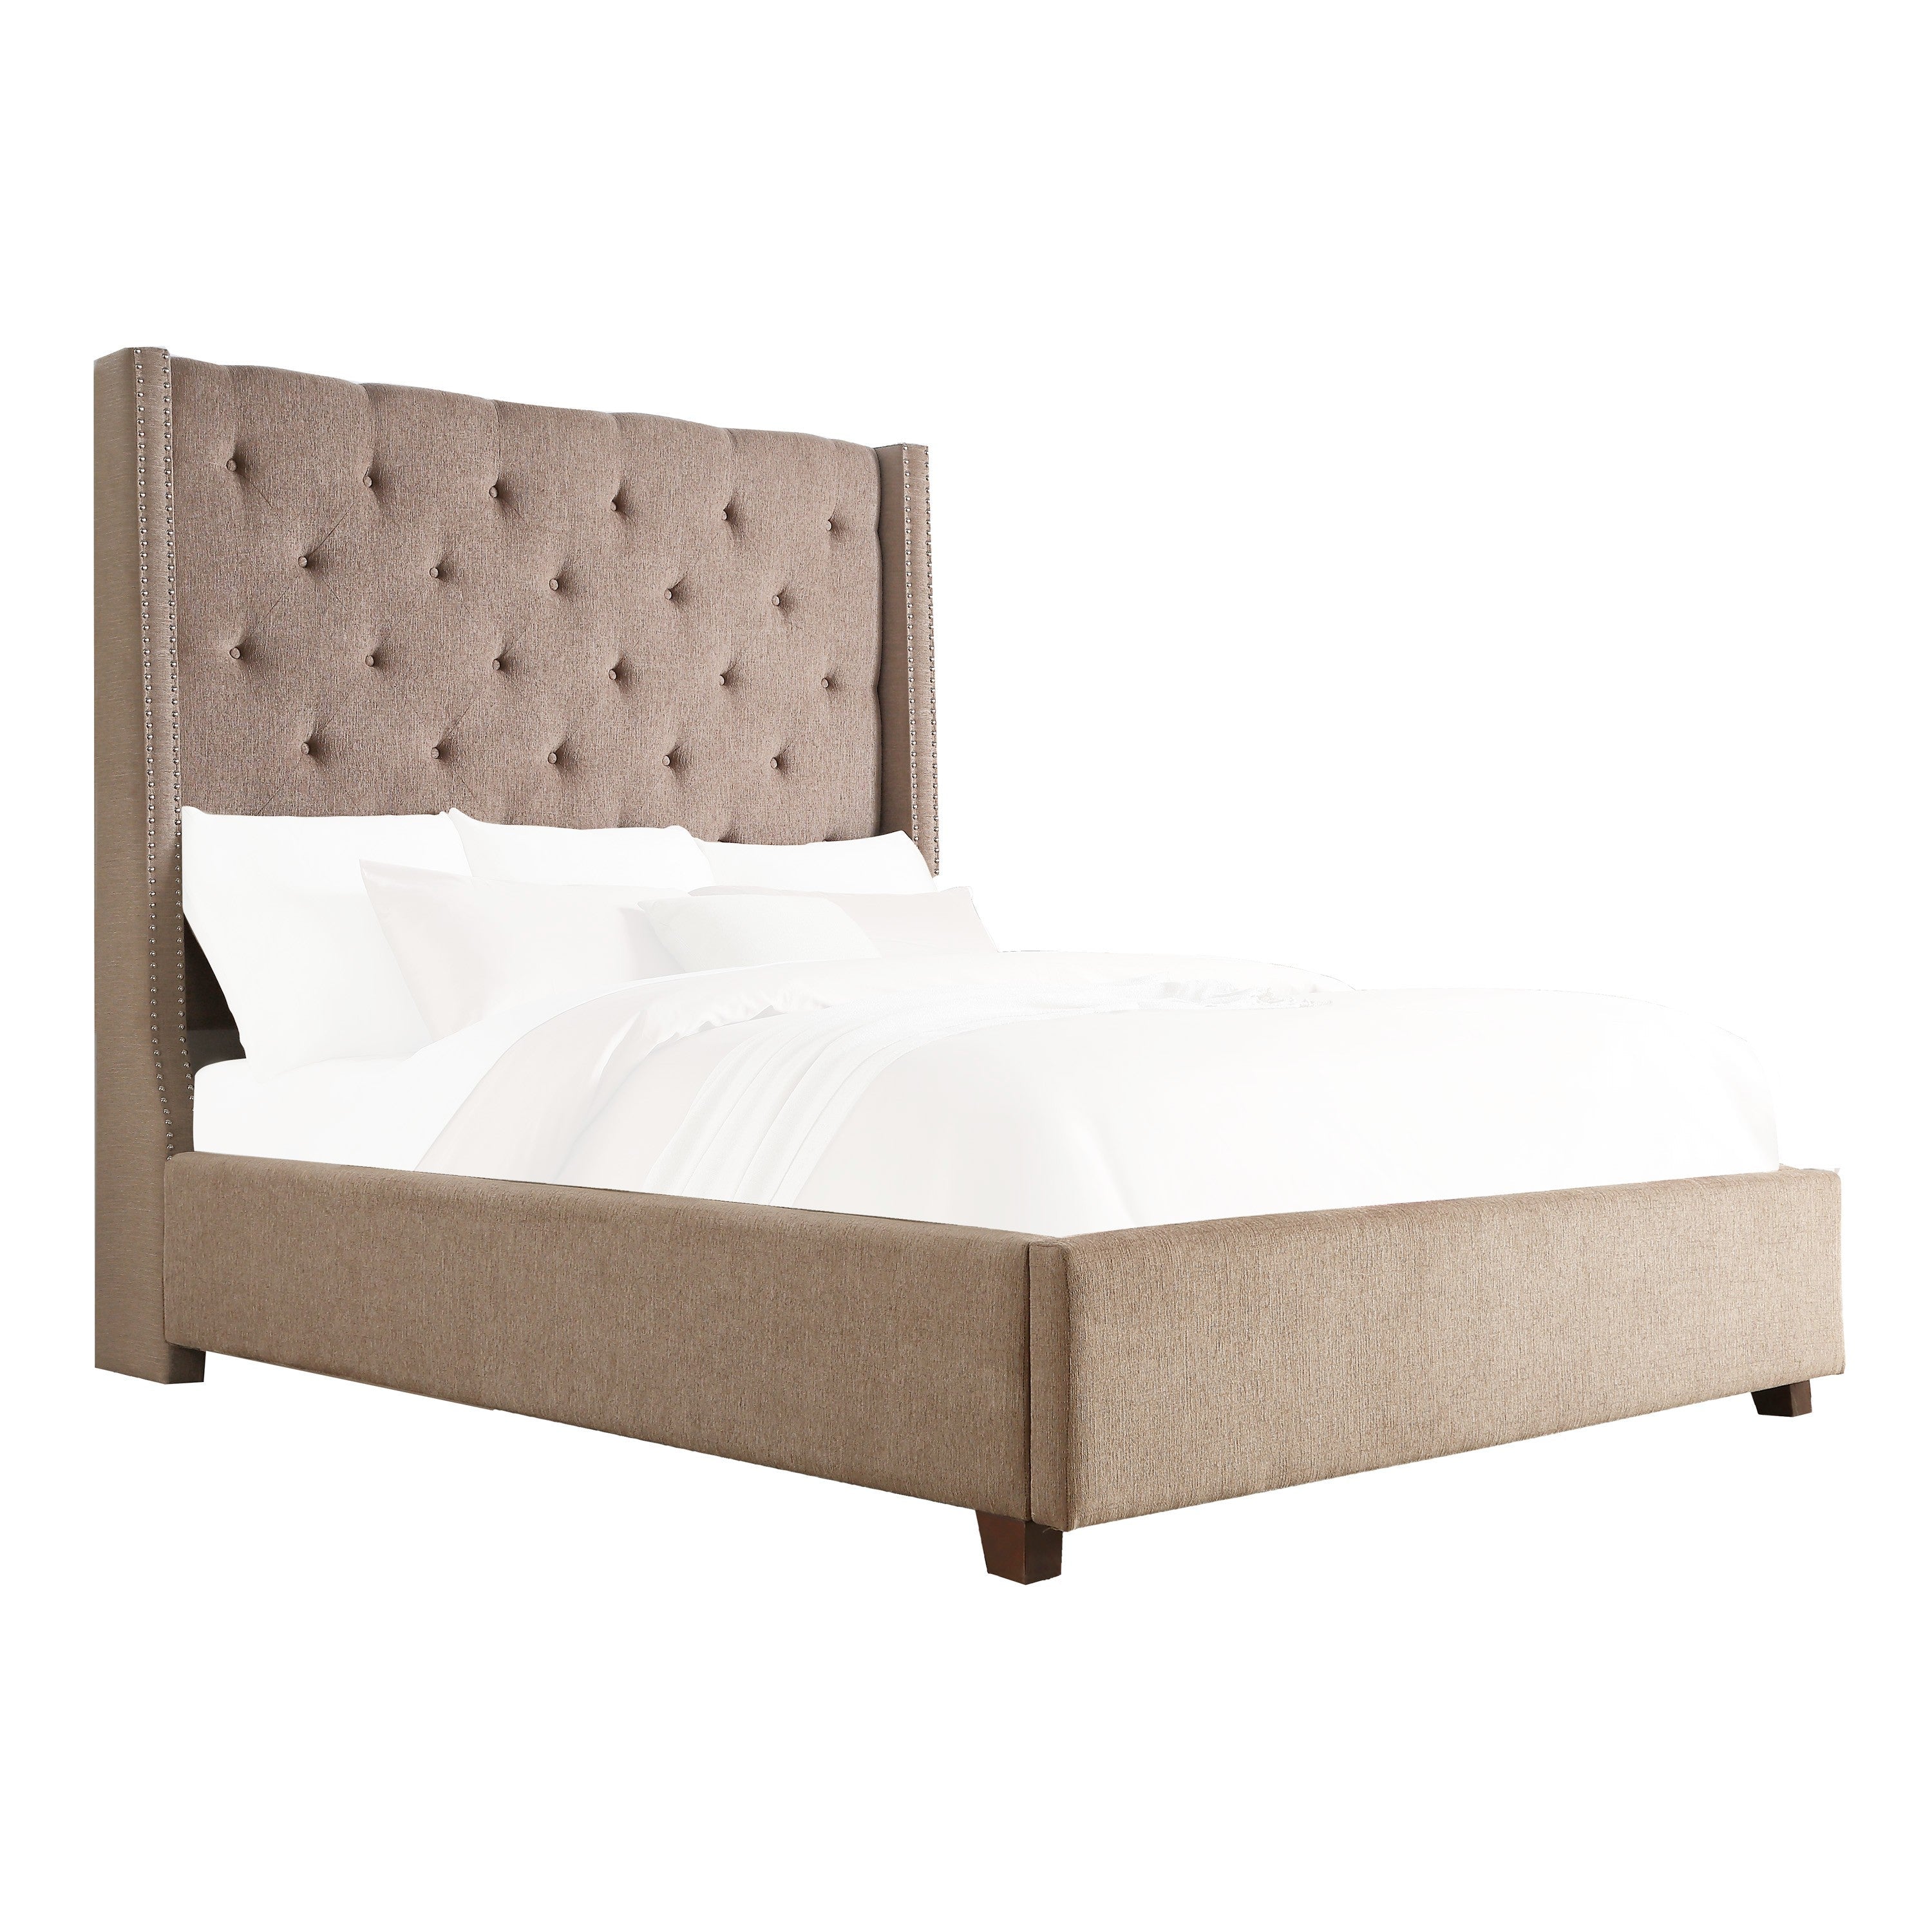 Fairborn Brown King Upholstered Storage Platform Bed - SET | 5877KBR-1 | 5877KBR-3EK | 5877K-2DW - Bien Home Furniture &amp; Electronics